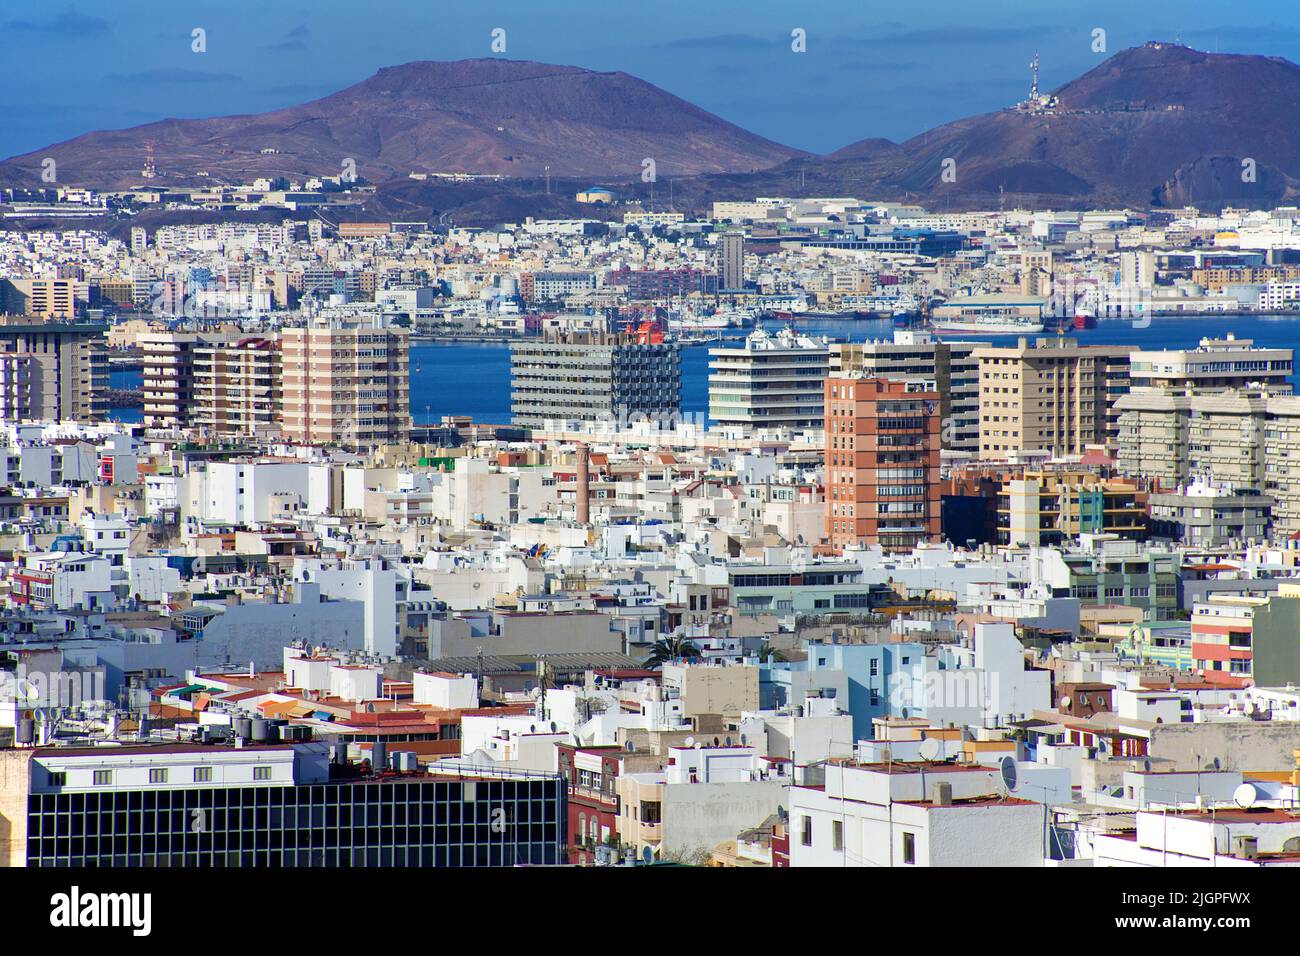 Vue d'ensemble, ville de Las Palmas, Grand Canary, Iles Canaries, Espagne, Europe Banque D'Images